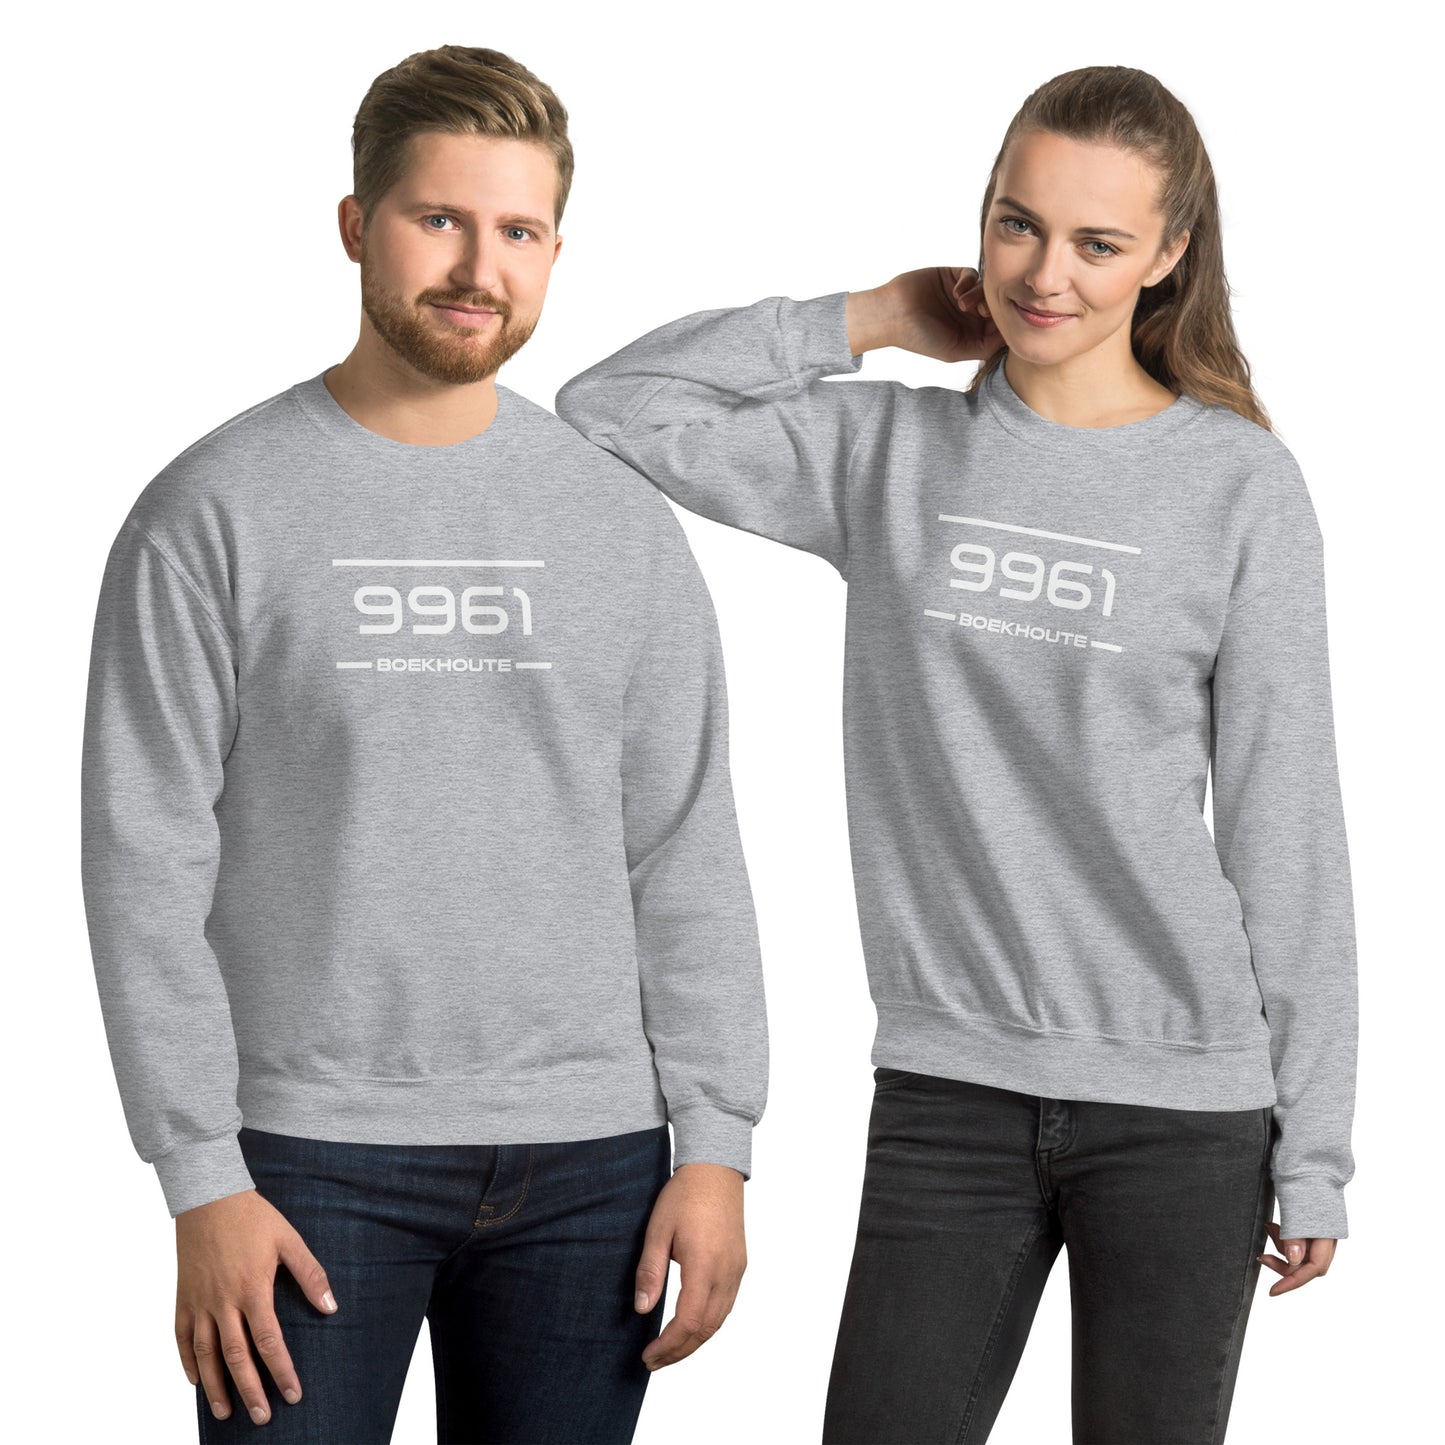 Sweater - 9961 - Boekhoute (M/V)